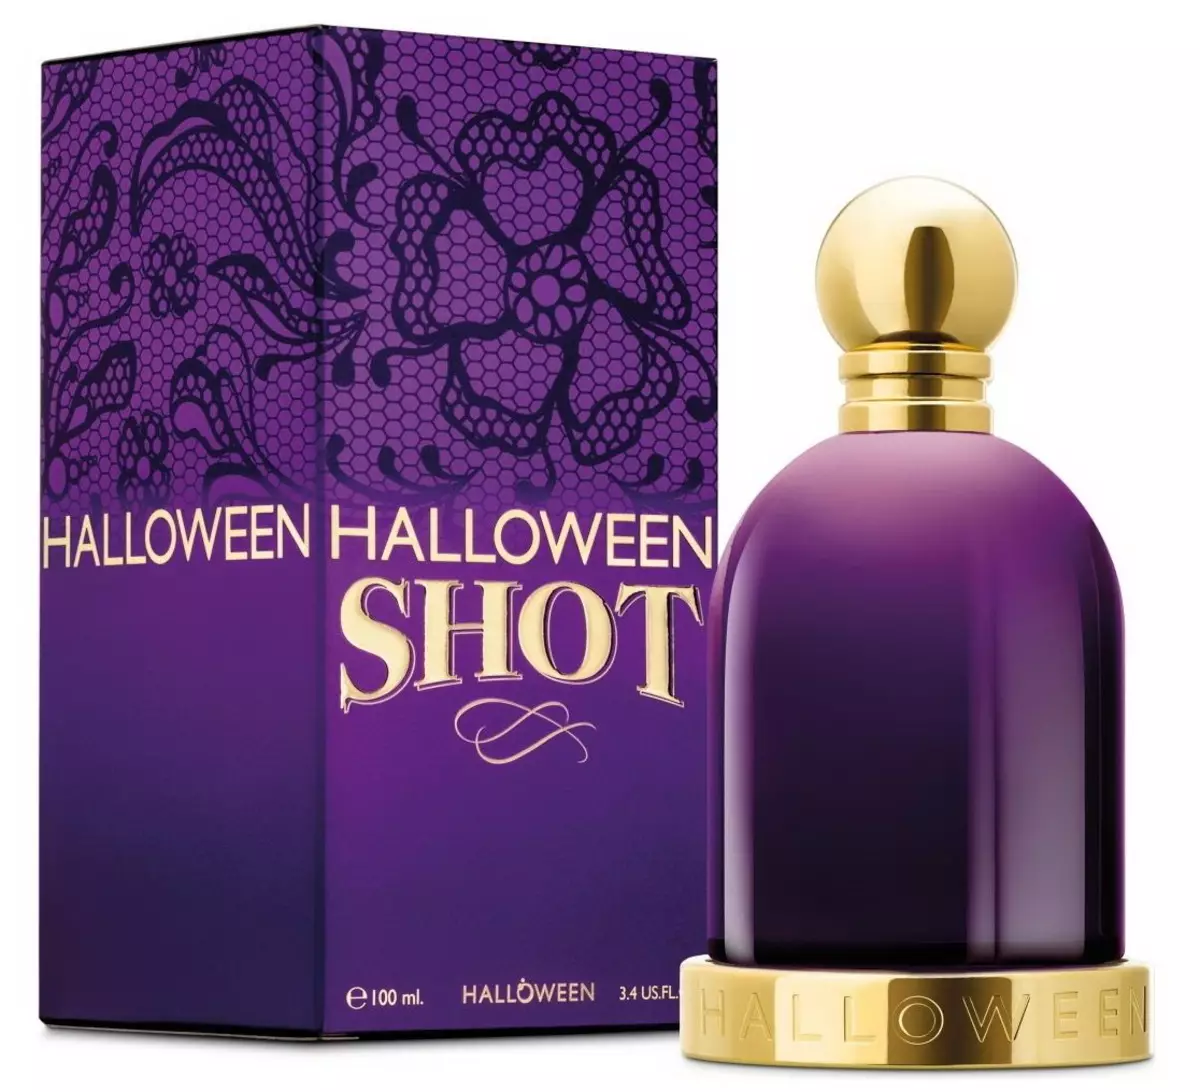 Perfume de Halloween: Perfume das mulheres e dos homens, água do banheiro do homem, dicas de fragrância 23440_14